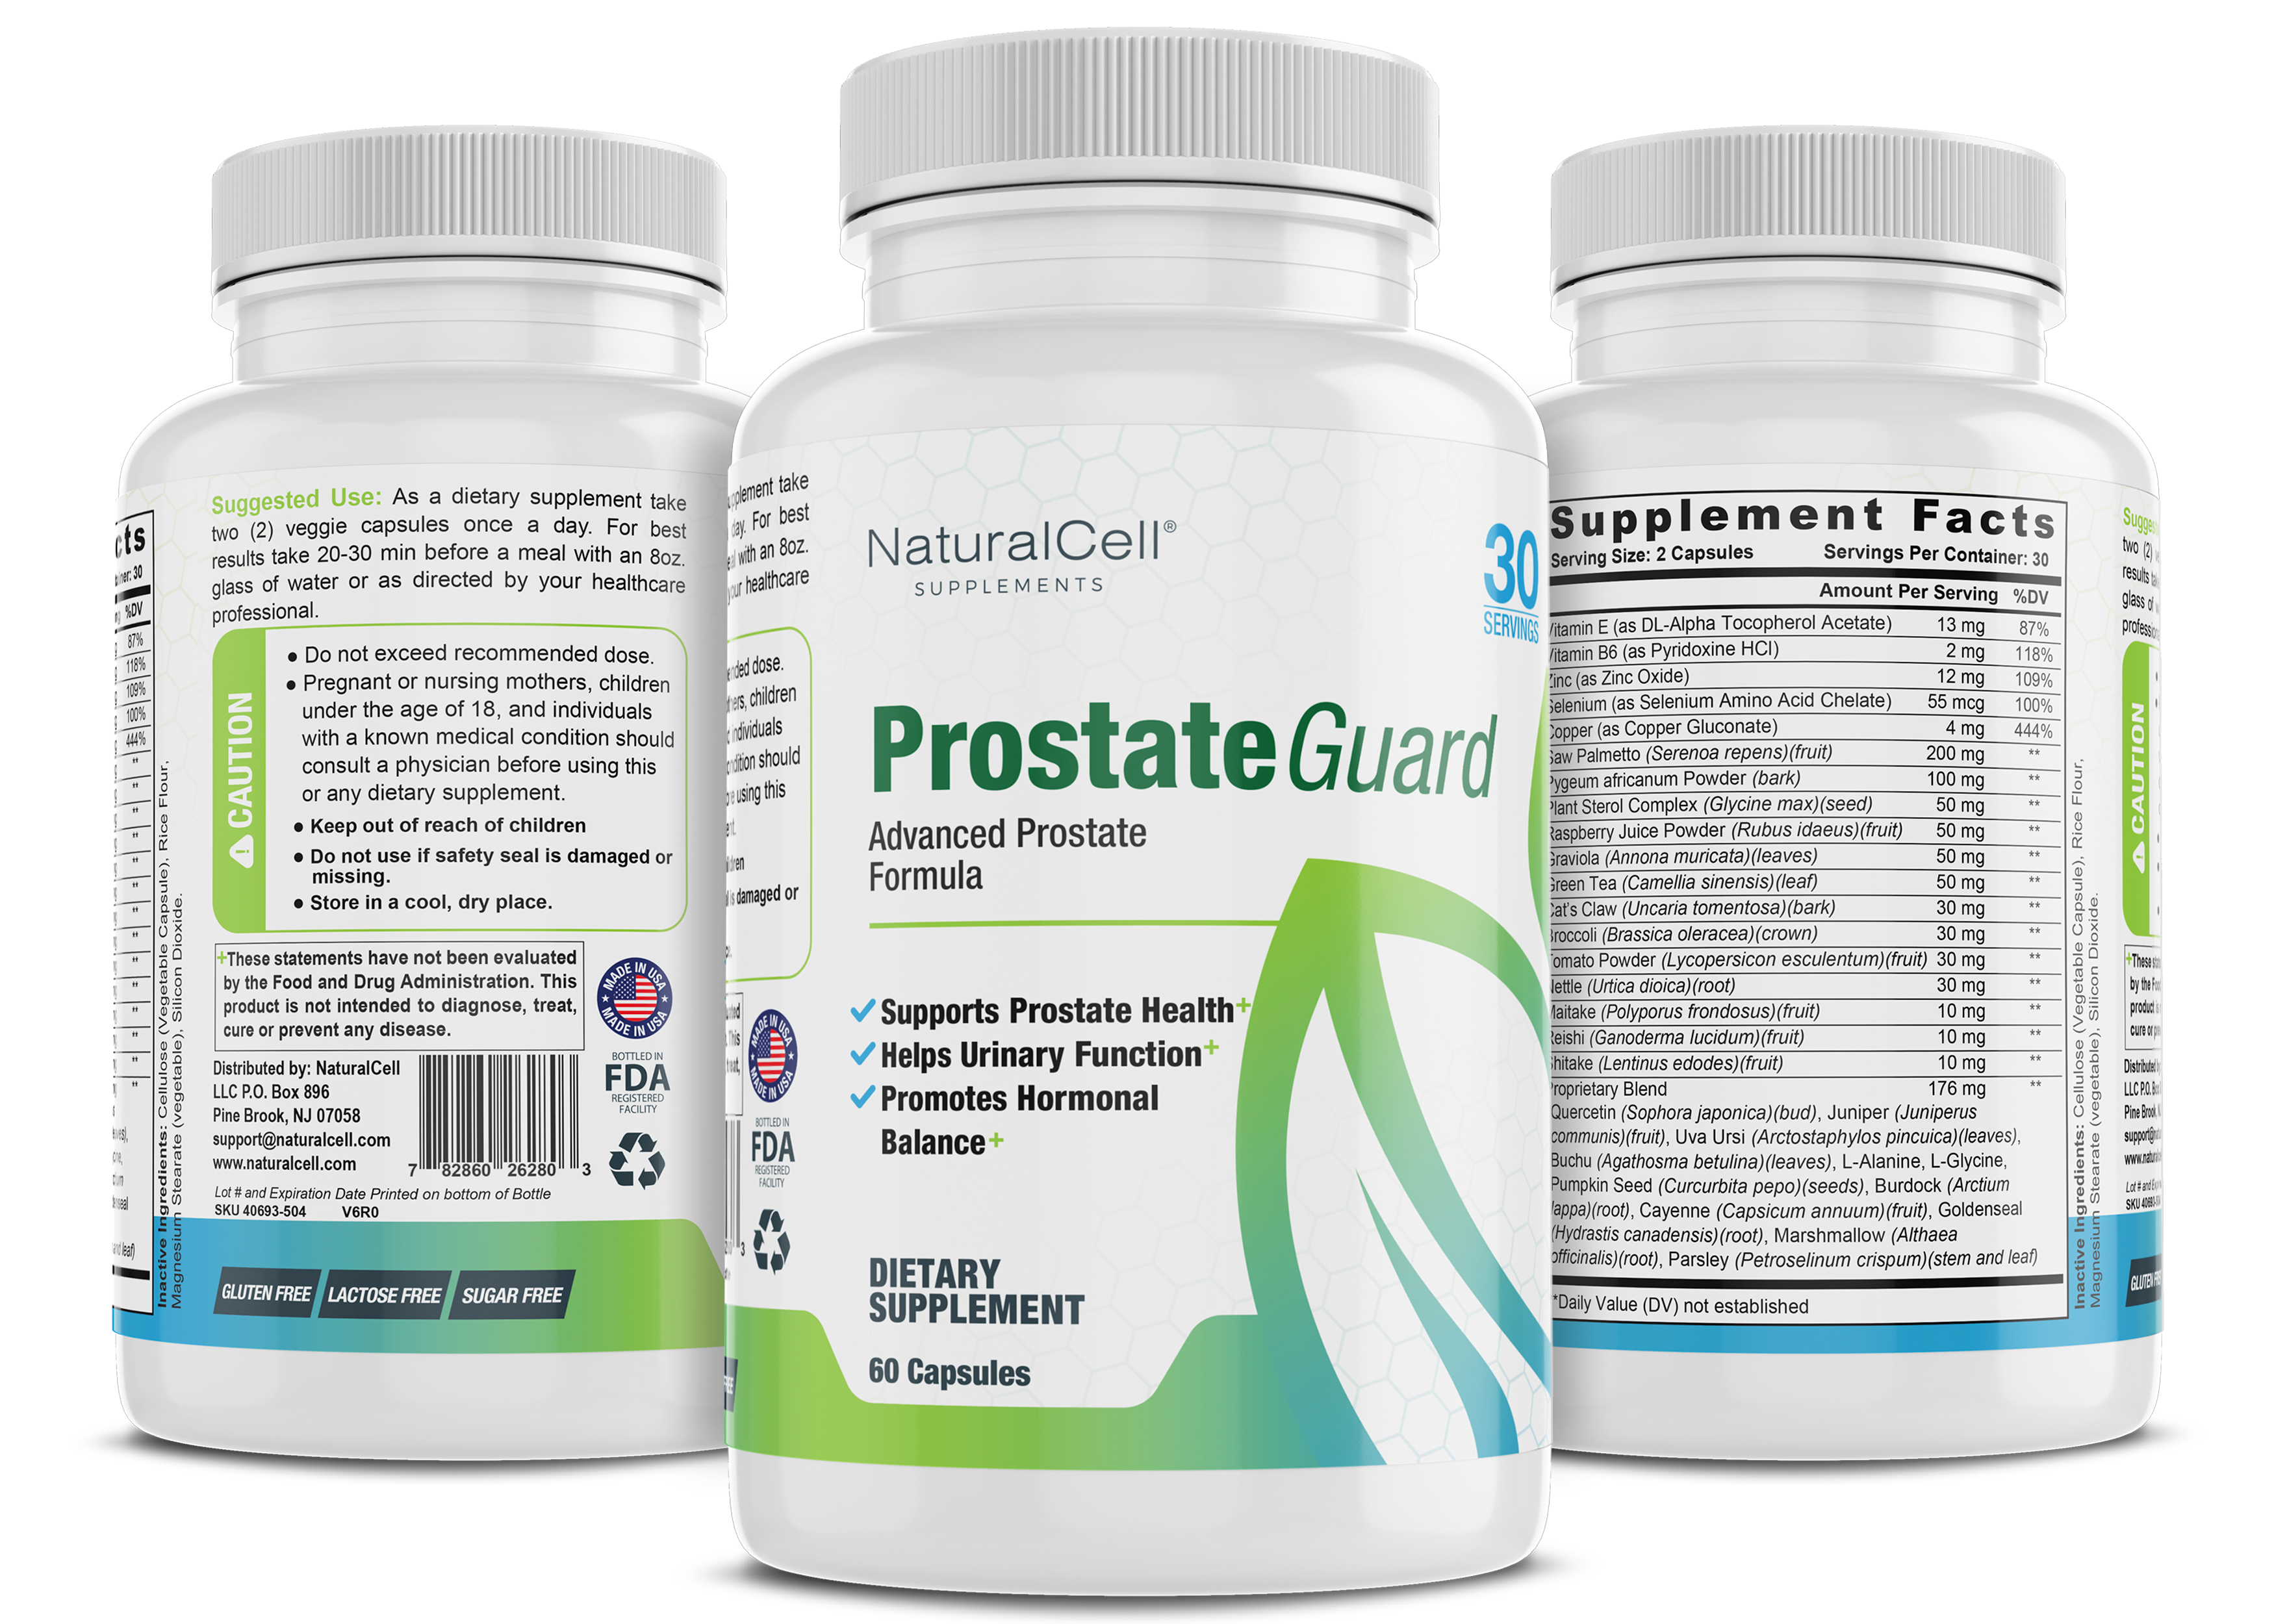 ProstateGuard - Advanced Prostate Formula